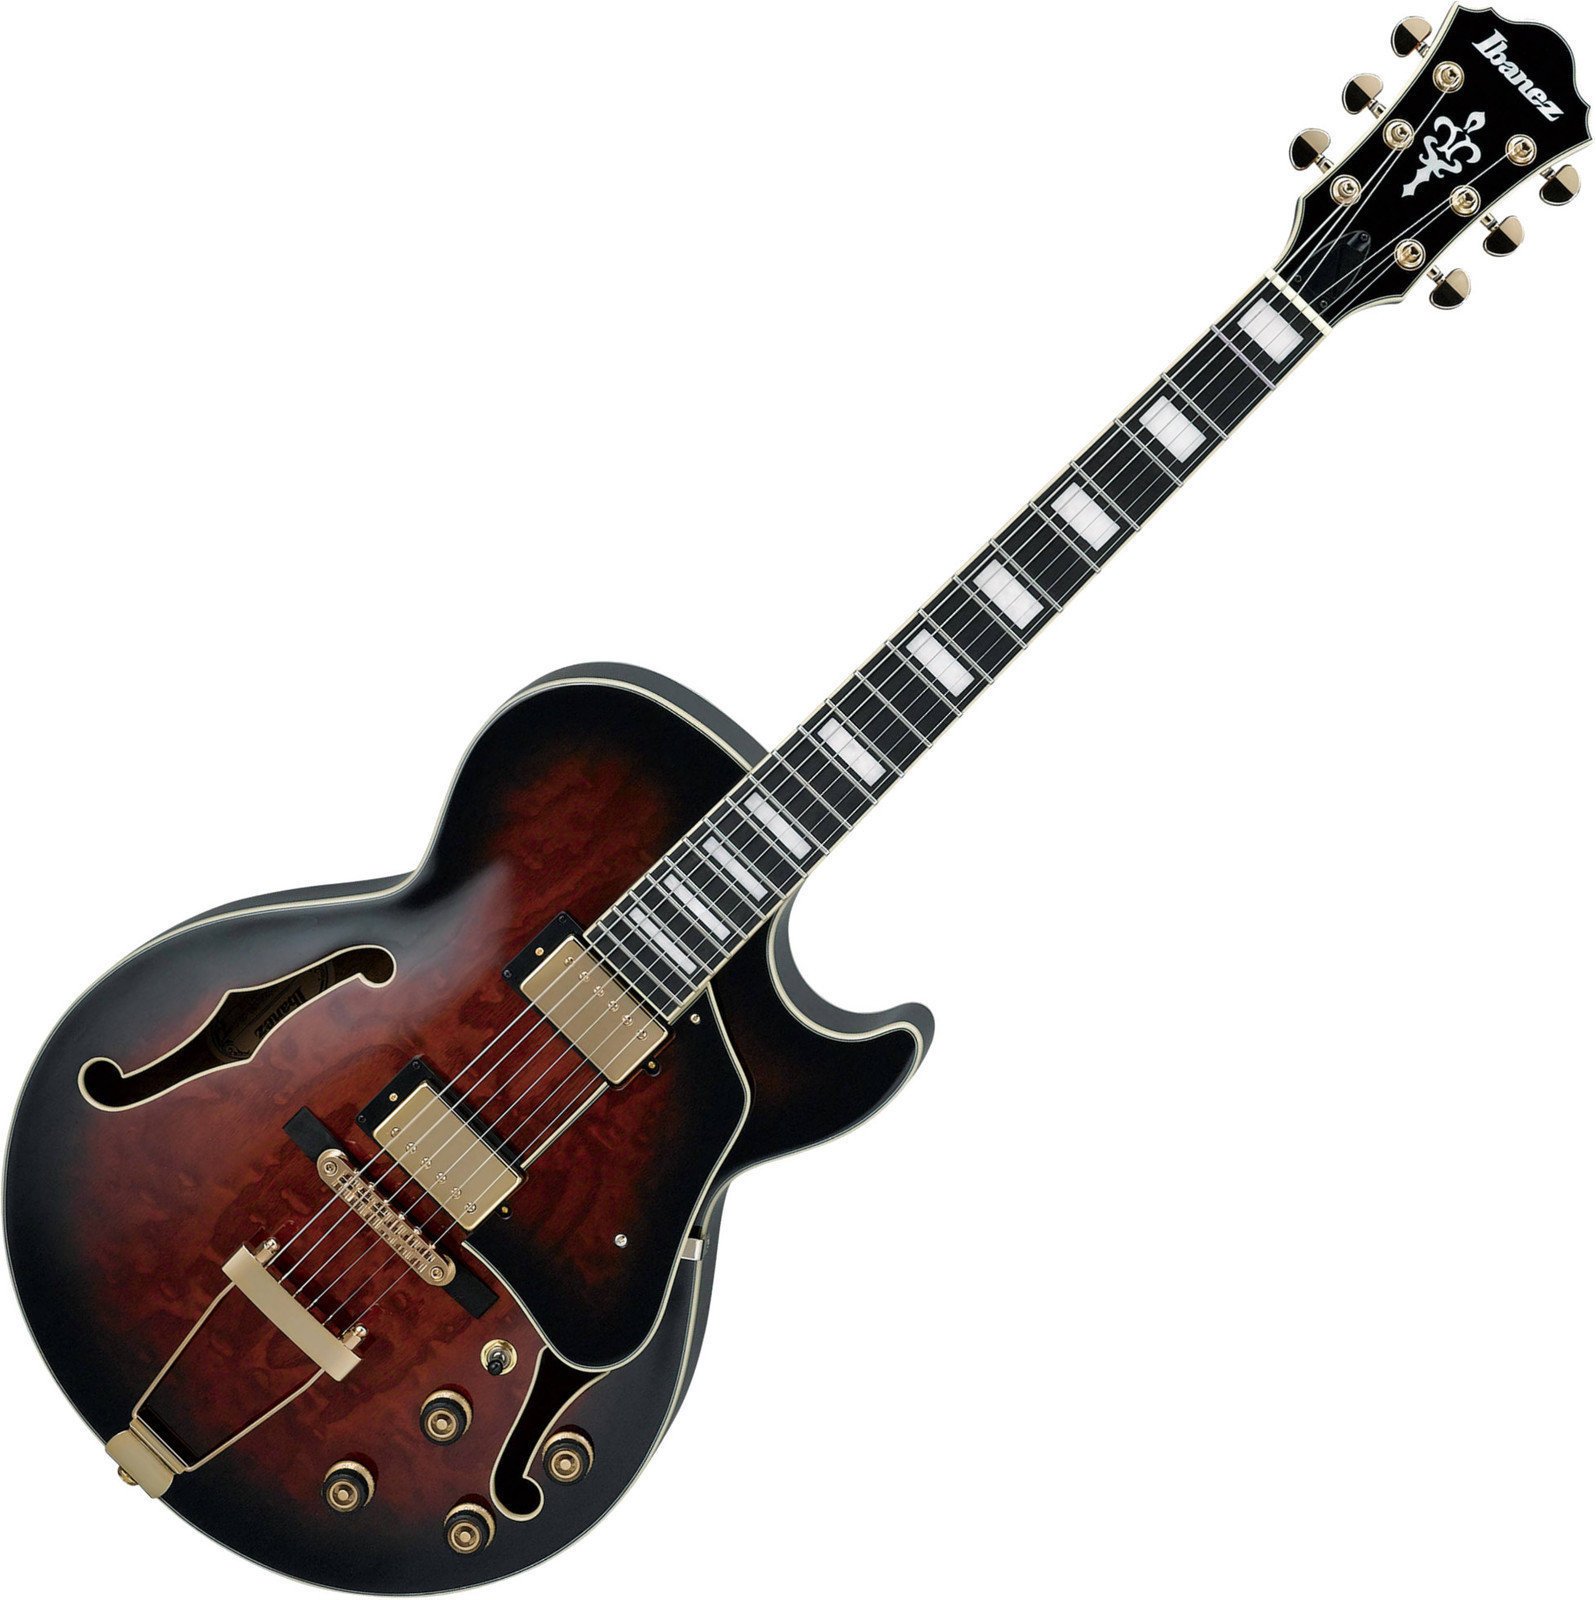 Semiakustická kytara Ibanez AG95QA-DBS Dark Brown Sunburst